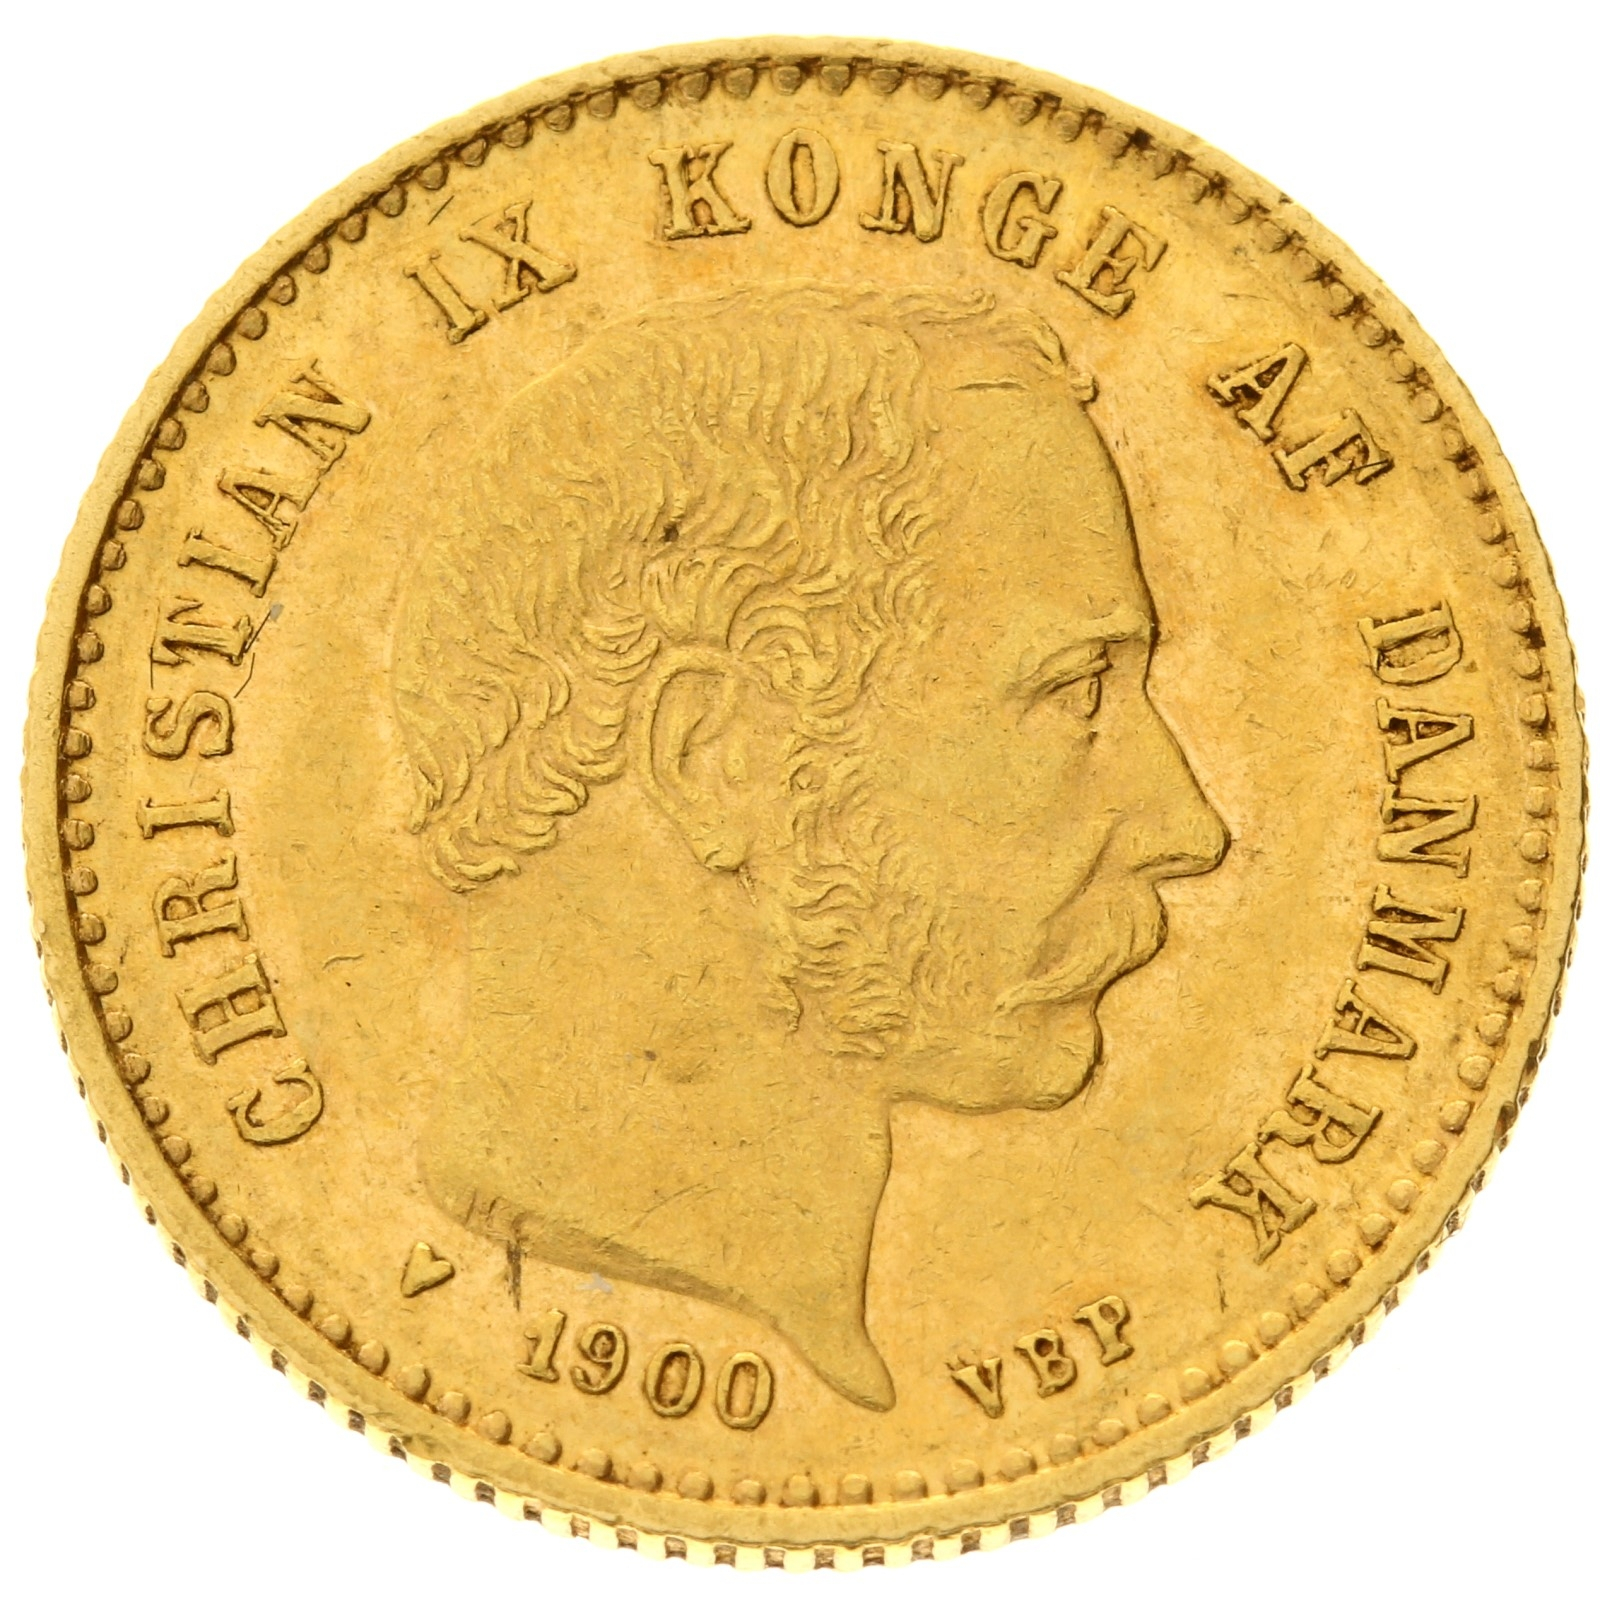 Denmark - 10 kroner - 1900 - Christian IX 